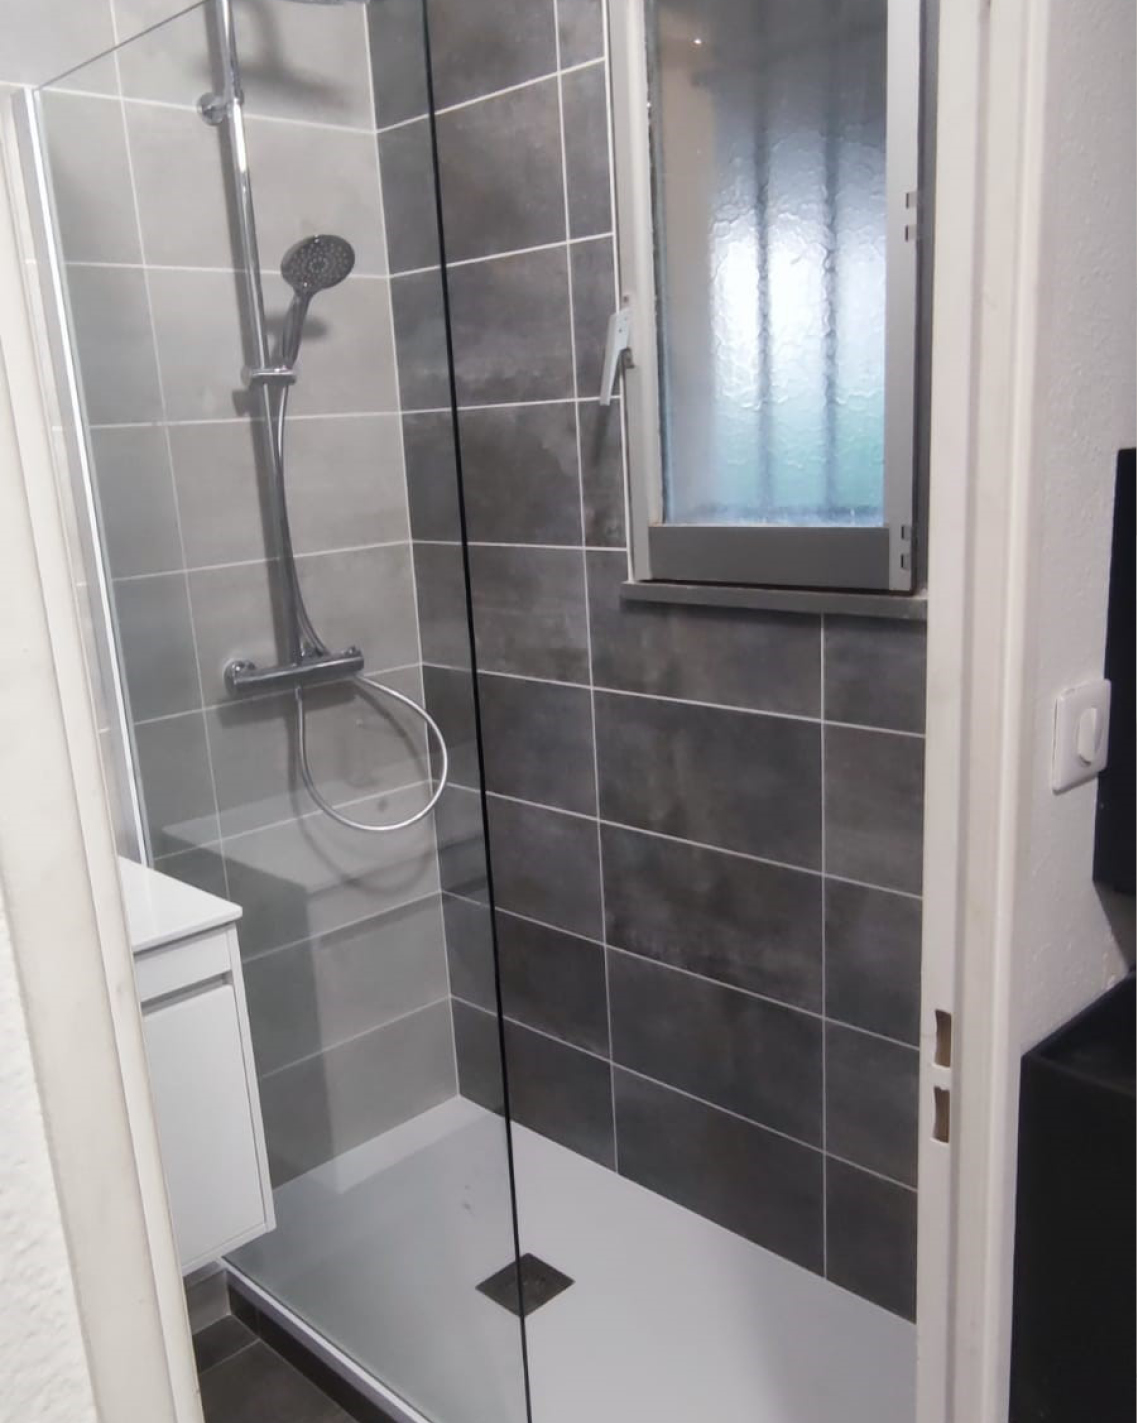 projet rénovation petite salle bain contemporaine travaux après douche bailloeuil Perpignan